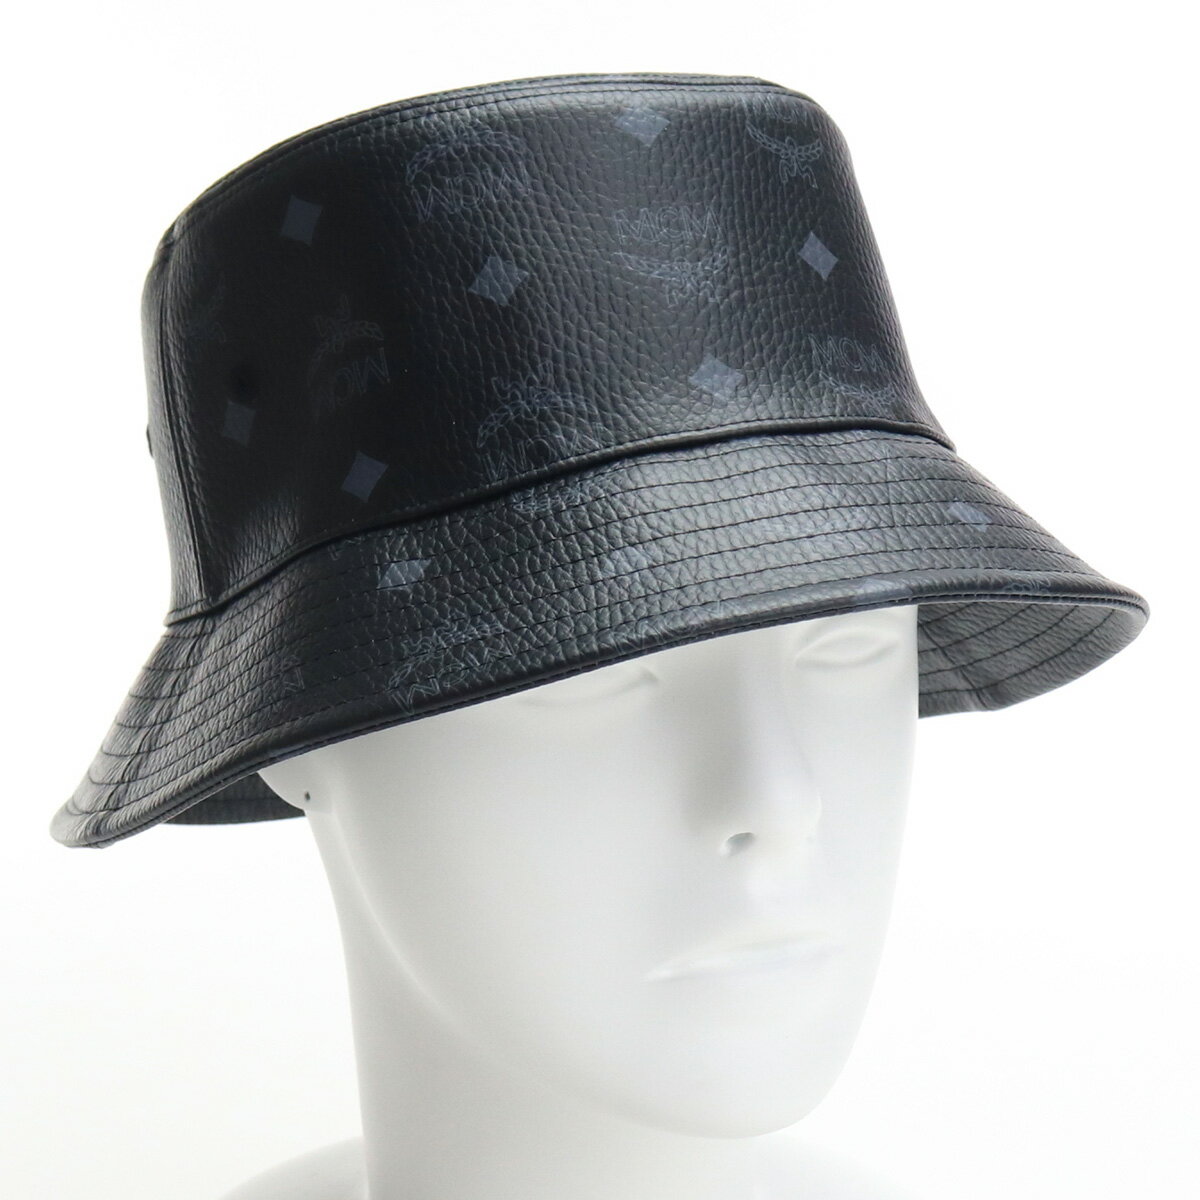 エムシーエム MCM メンズ−ハット 帽子類 MEHAAMM04 BK001 bos-24 cap-01 ブラック メンズ 2021SS sale-8